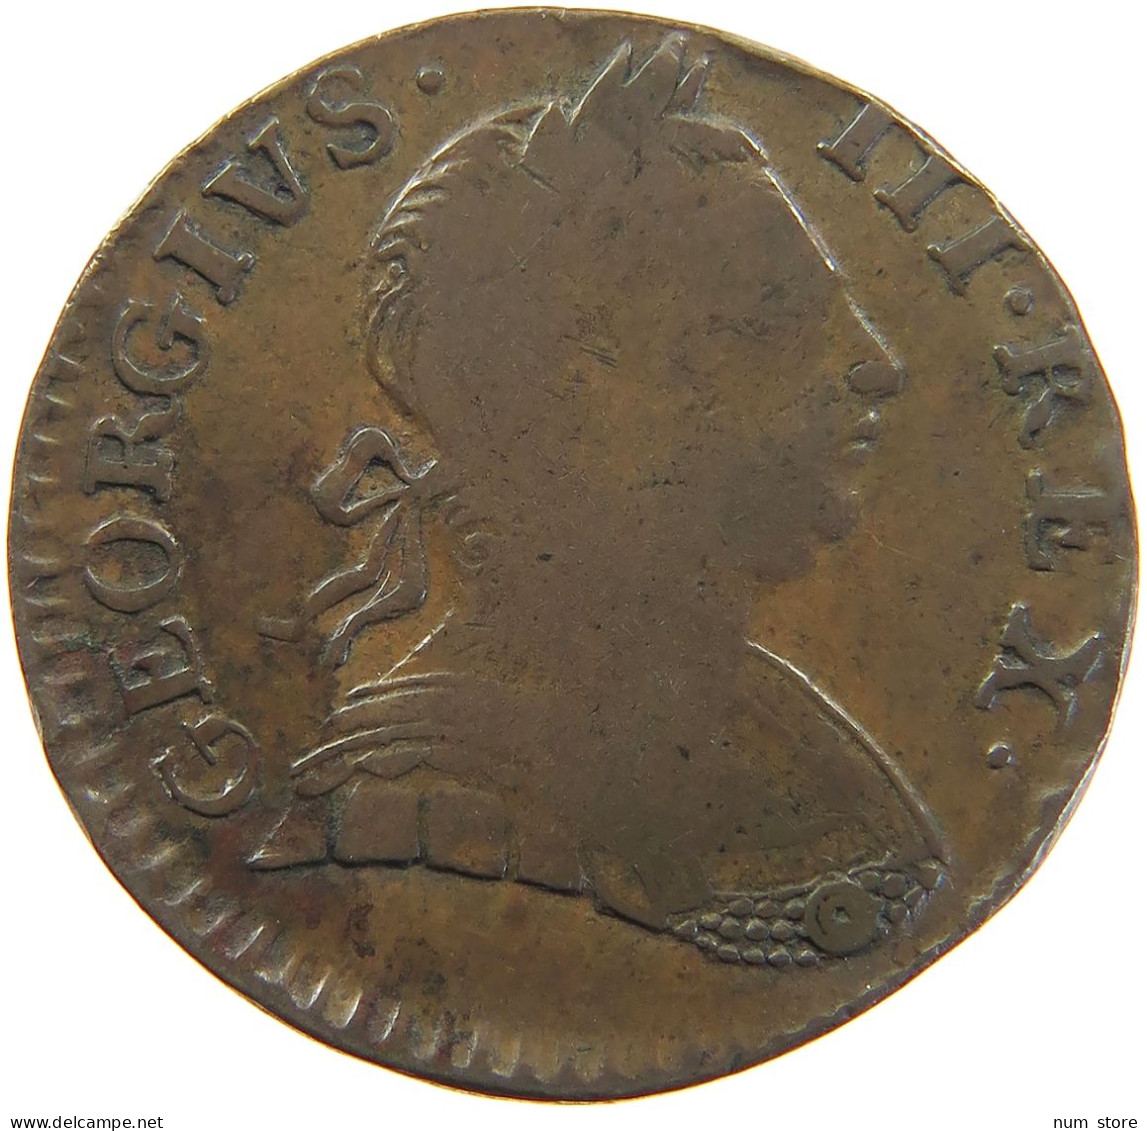 GREAT BRITAIN HALFPENNY 1/2 PENNY 1773 Georg III. 1760-1820 WEAK STRUCK #t021 0099 - B. 1/2 Penny